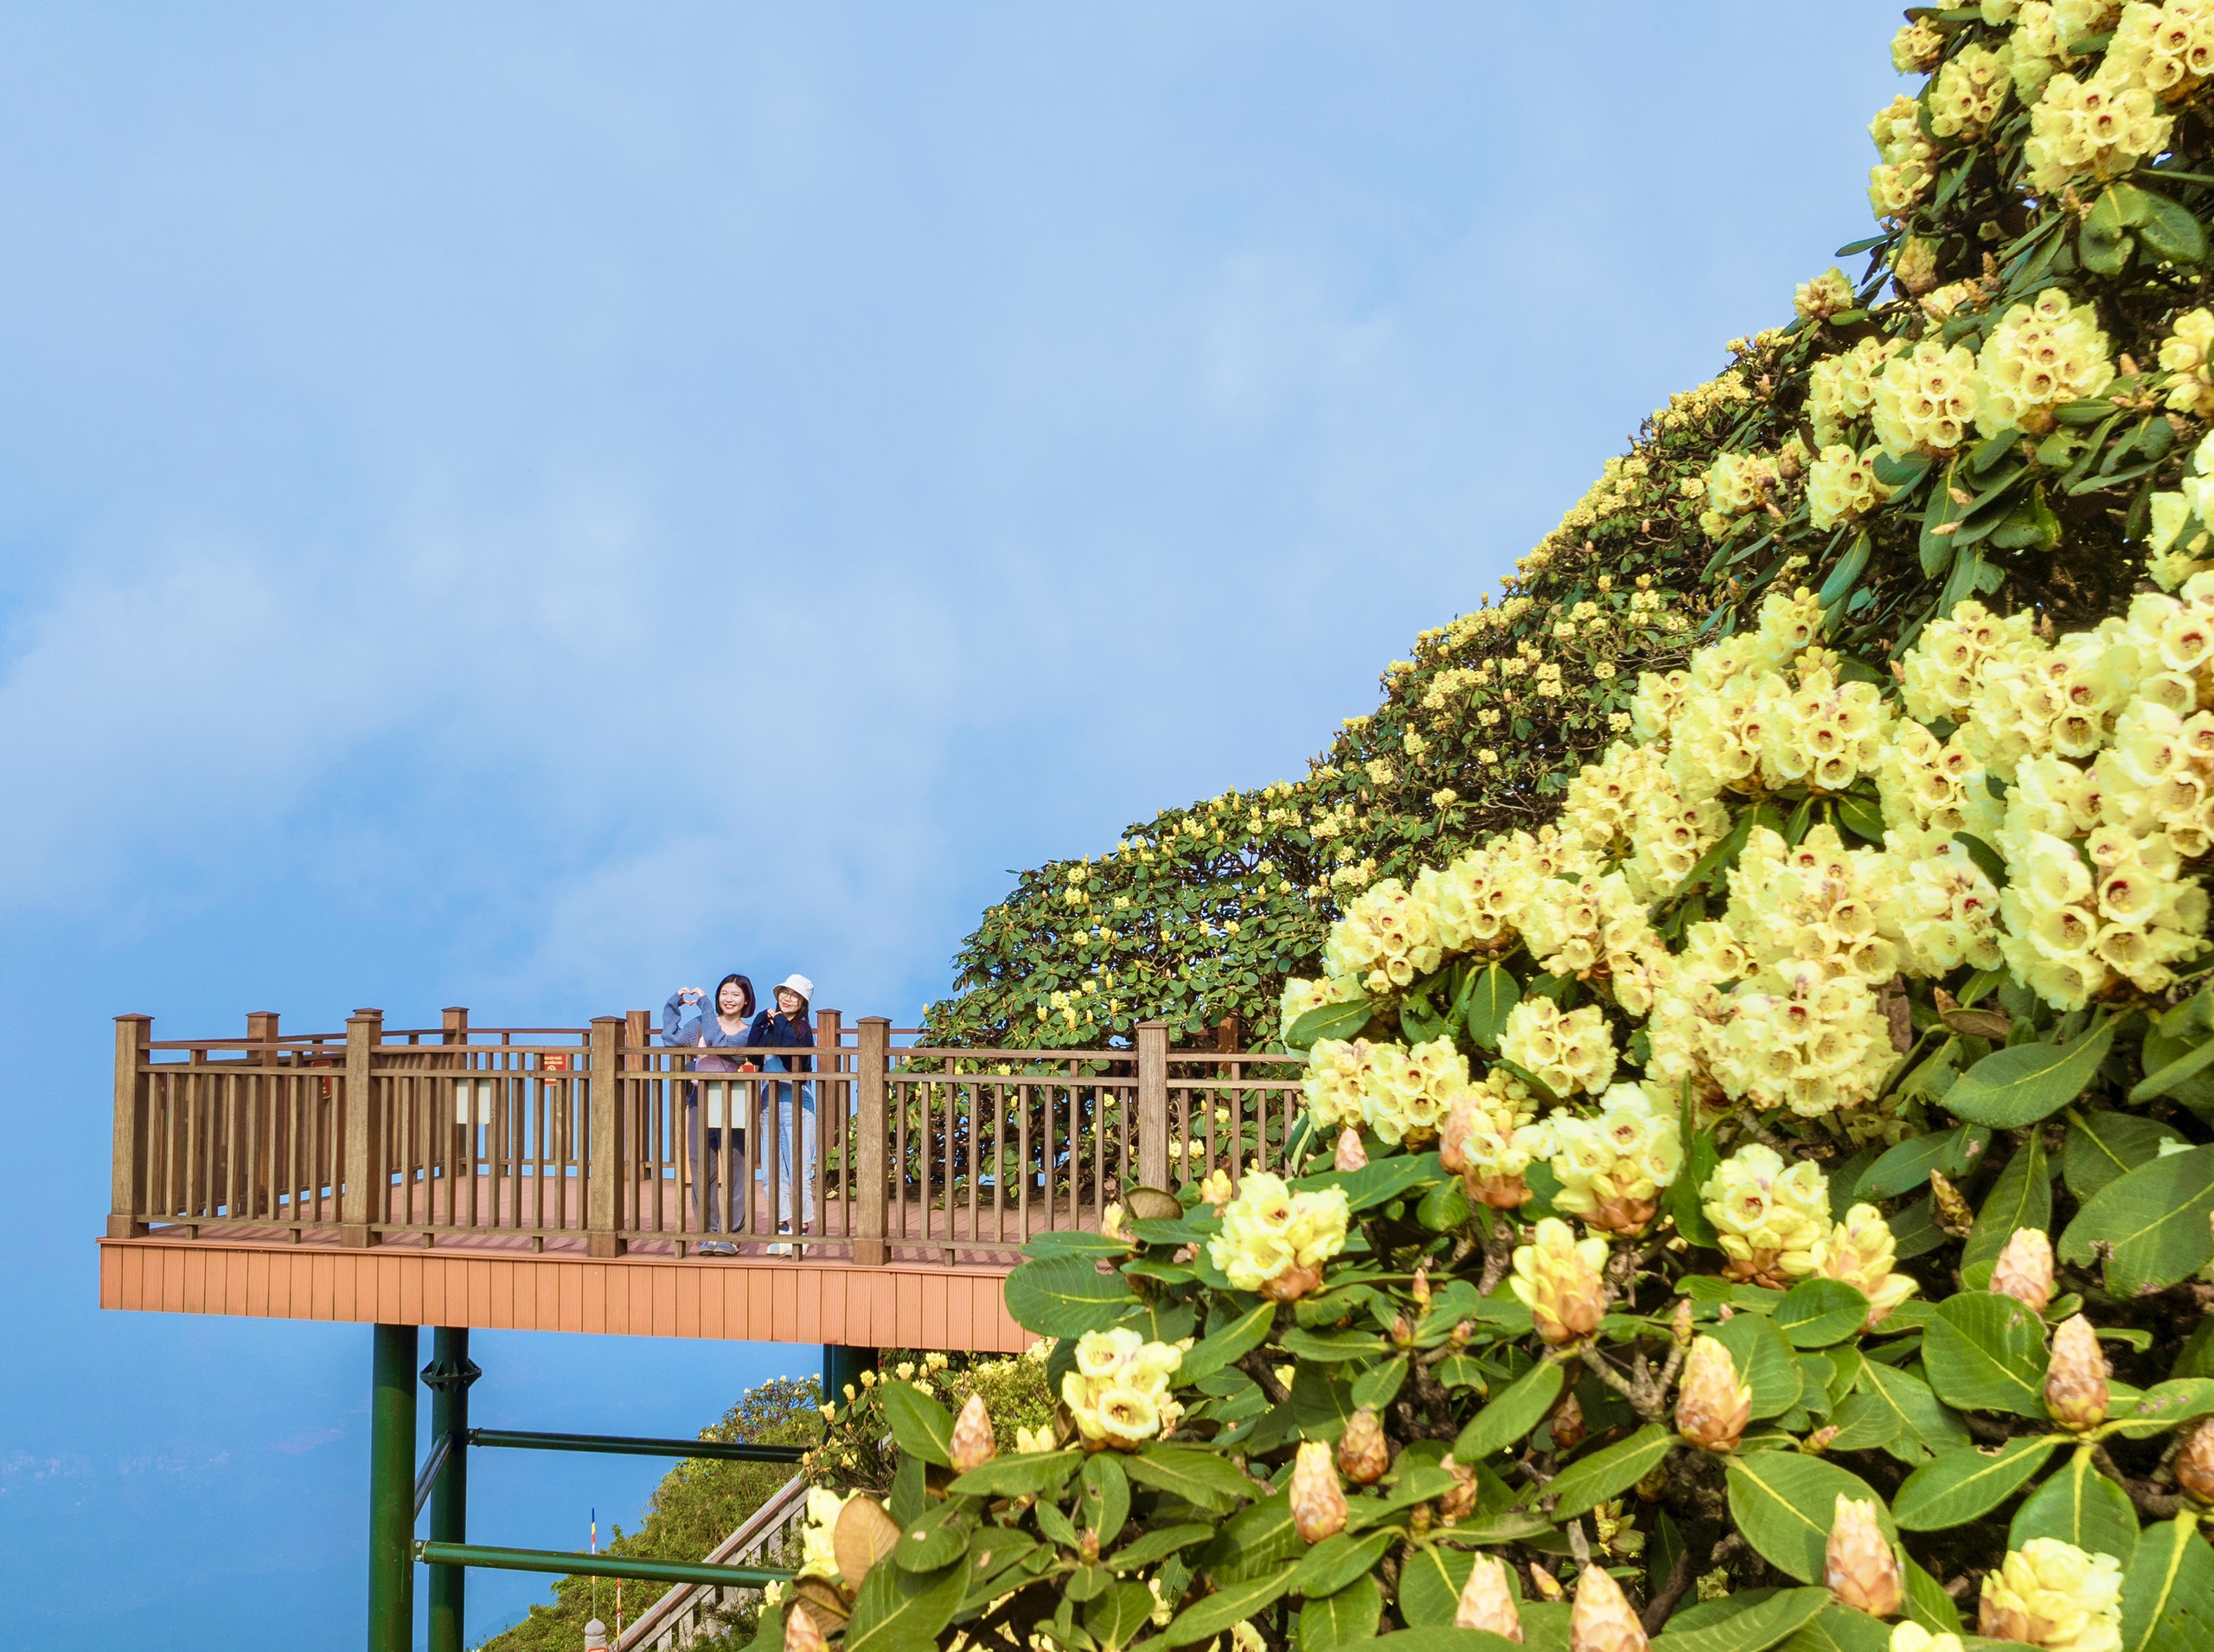 Một trong những điểm ngắm hoa đỗ quyên lý tưởng bậc nhất Tây Bắc là con đường dạo ngắm hoa đỗ quyên trên đỉnh Fansipan, nằm ở độ cao 3.000m so với mực nước biển. Đây là đường dạo ngắm hoa đỗ quyên đầu tiên tại Việt Nam, nằm tại Kim Sơn Bảo Thắng Tự thuộc quần thể kiến trúc văn hóa tâm linh trên đỉnh thiêng Fansipan, khánh thành từ tháng 5.2023